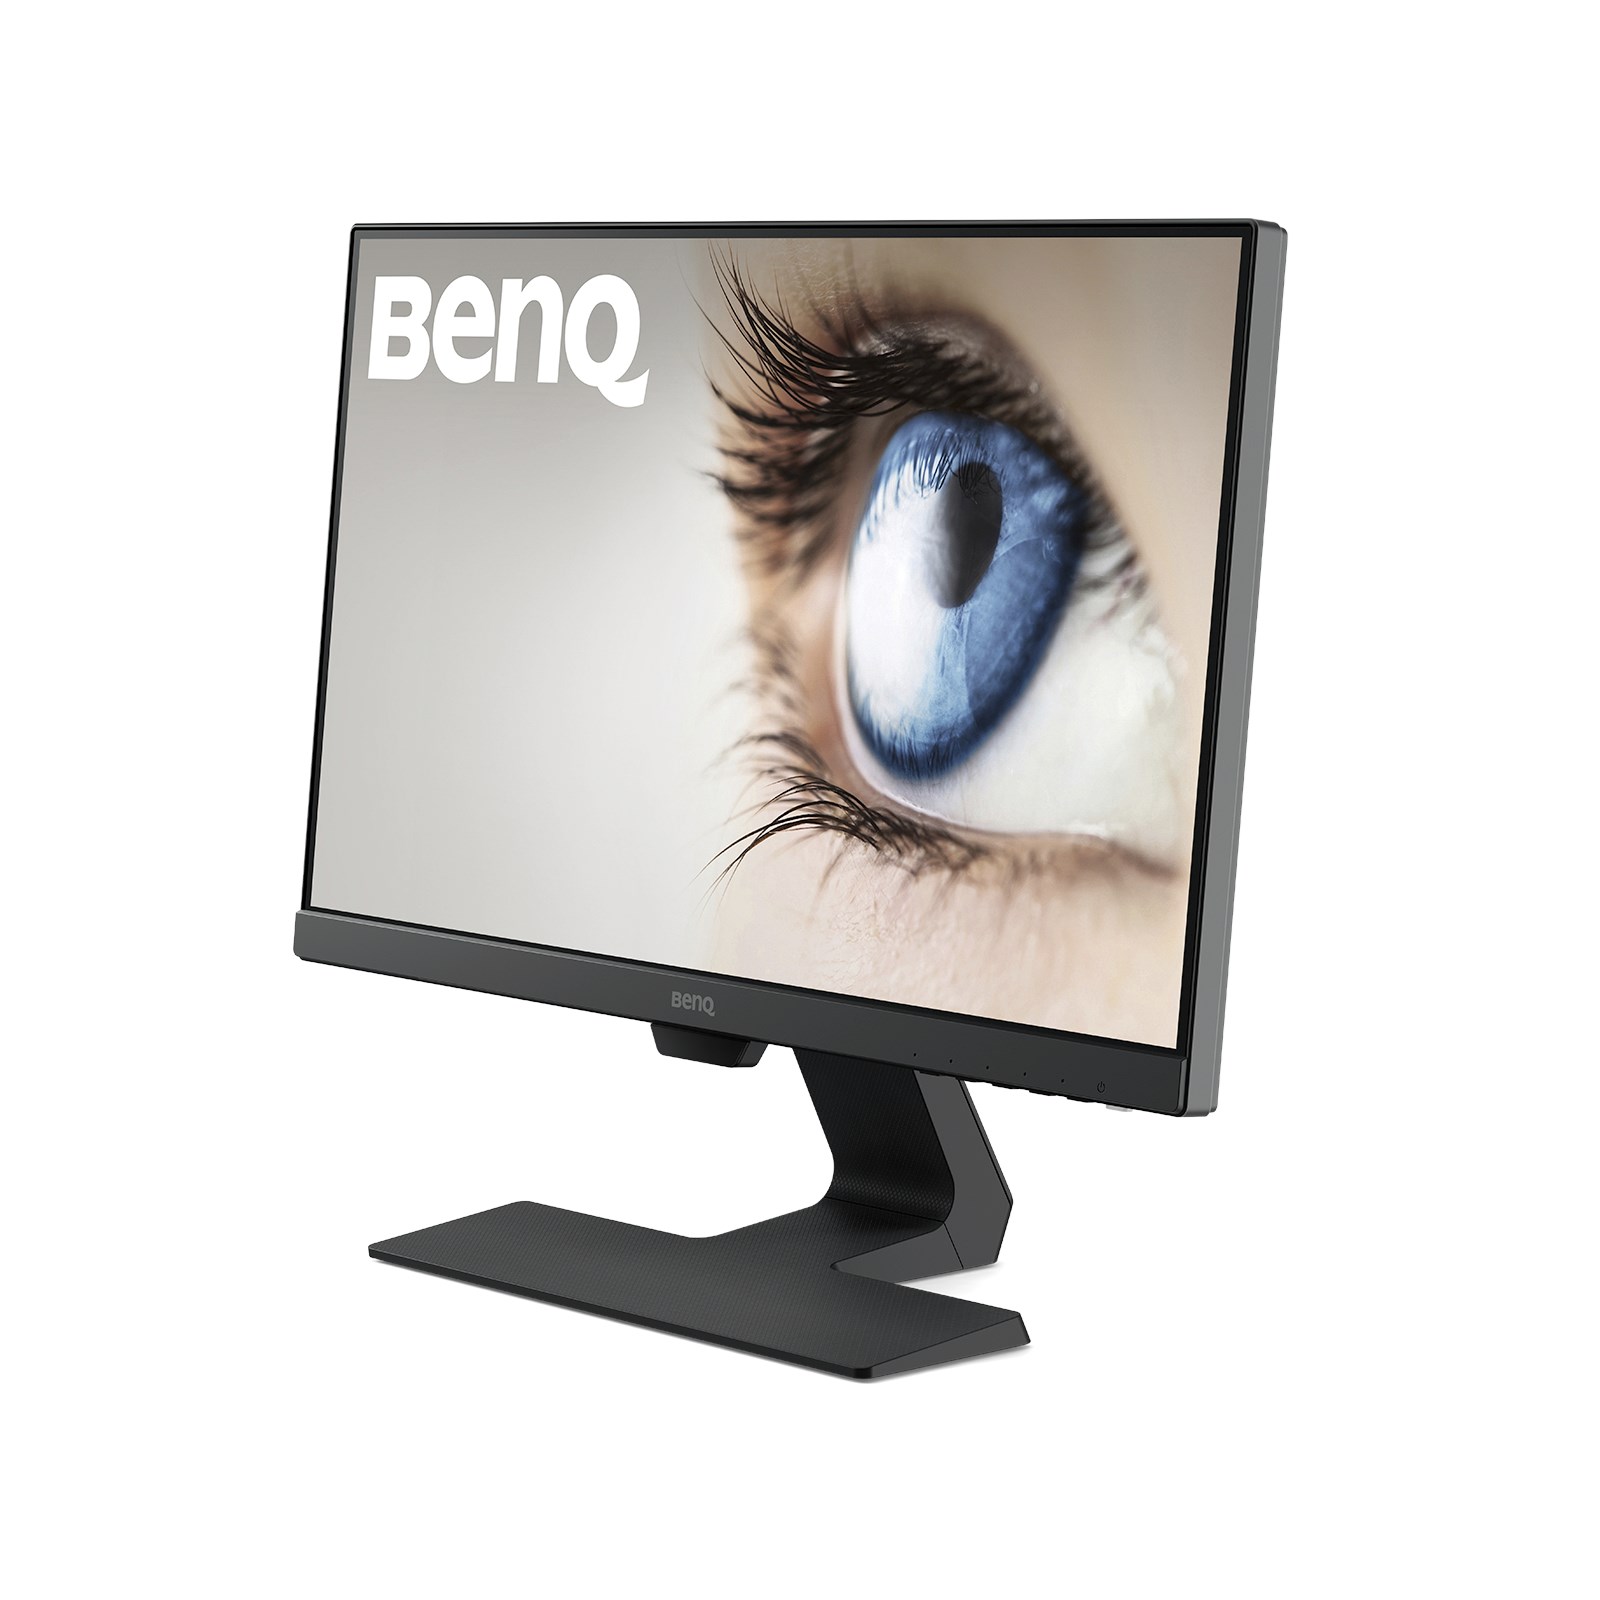 としたセレクトショップ BenQ パソコン モニター GW2280 21.5インチ ほぼ未使用品 ディスプレイ